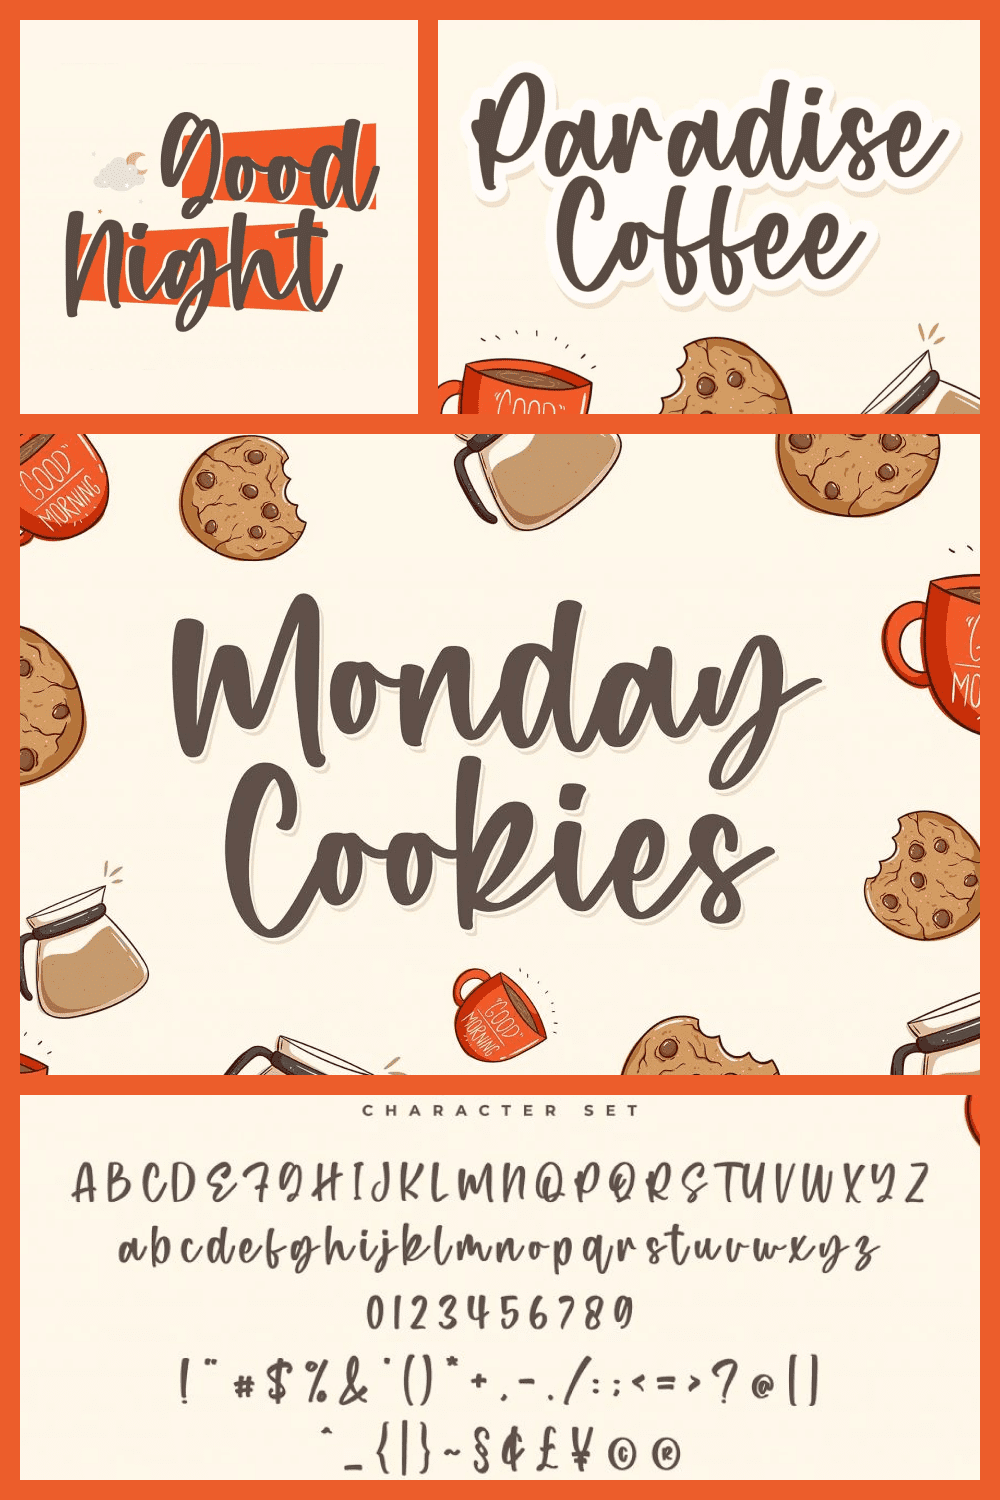 134 Monday Cookies – A Handwritten Script Font